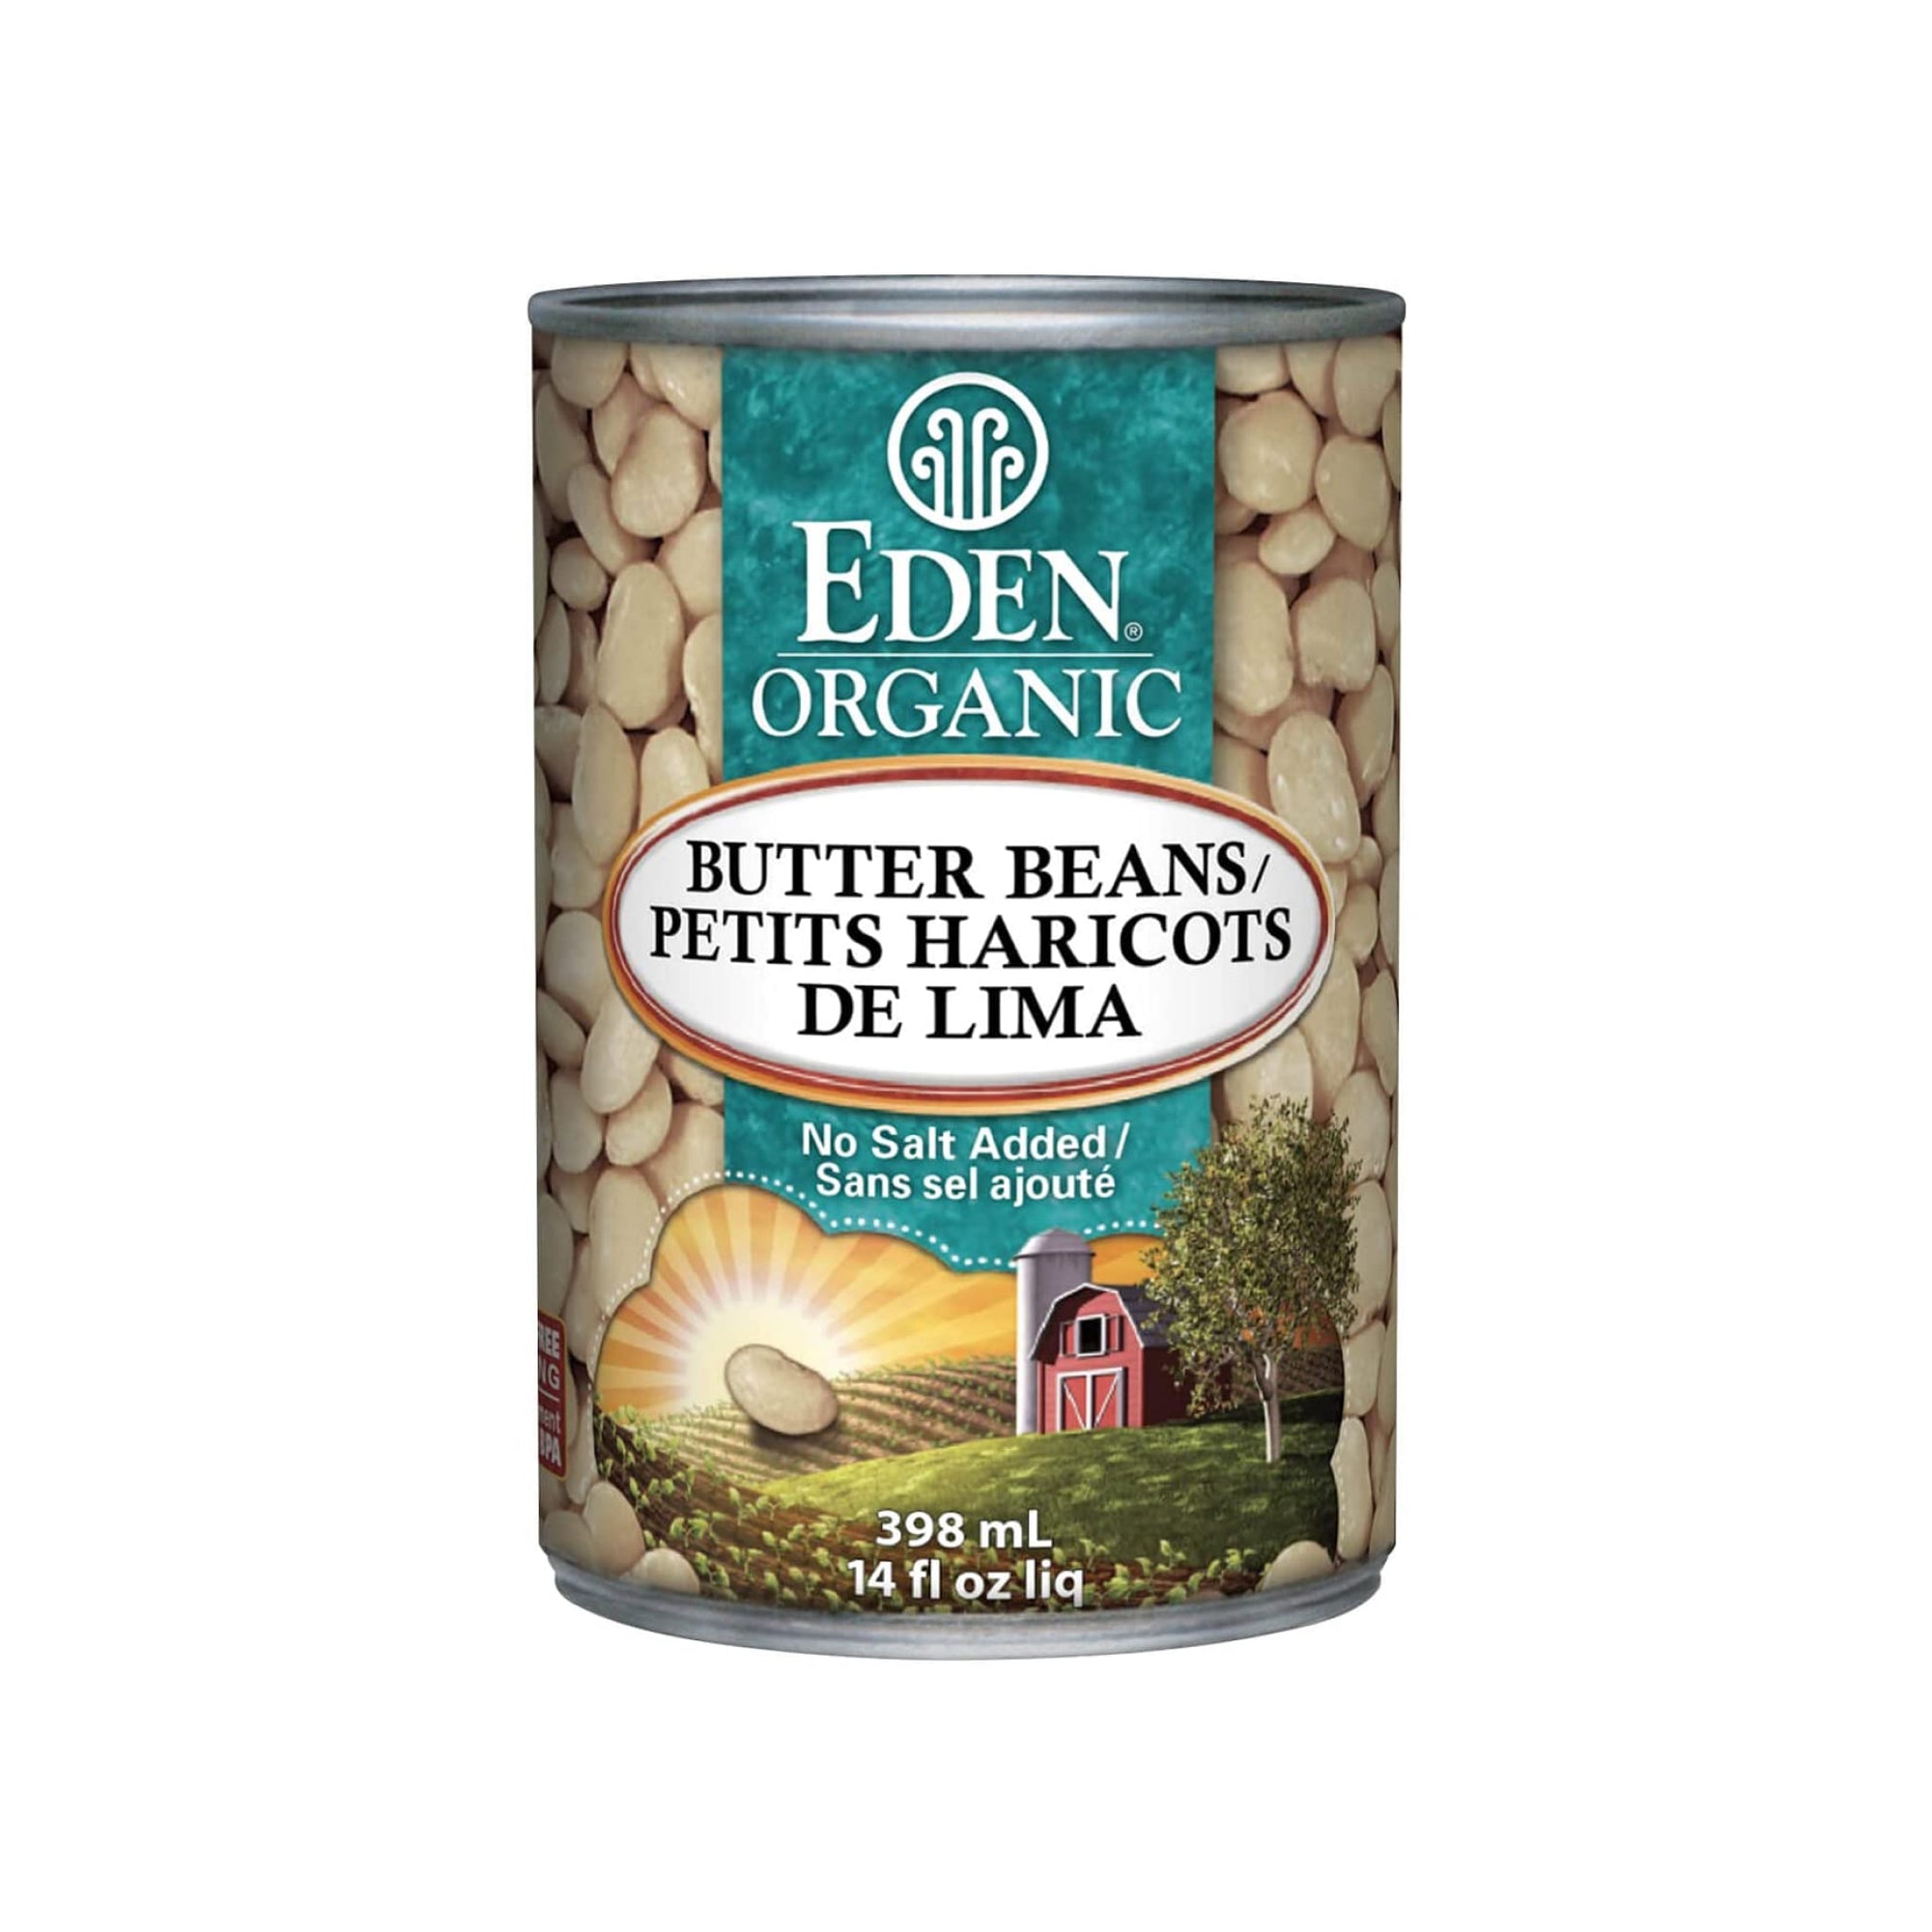 Eden Organic Butter Beans 398ml